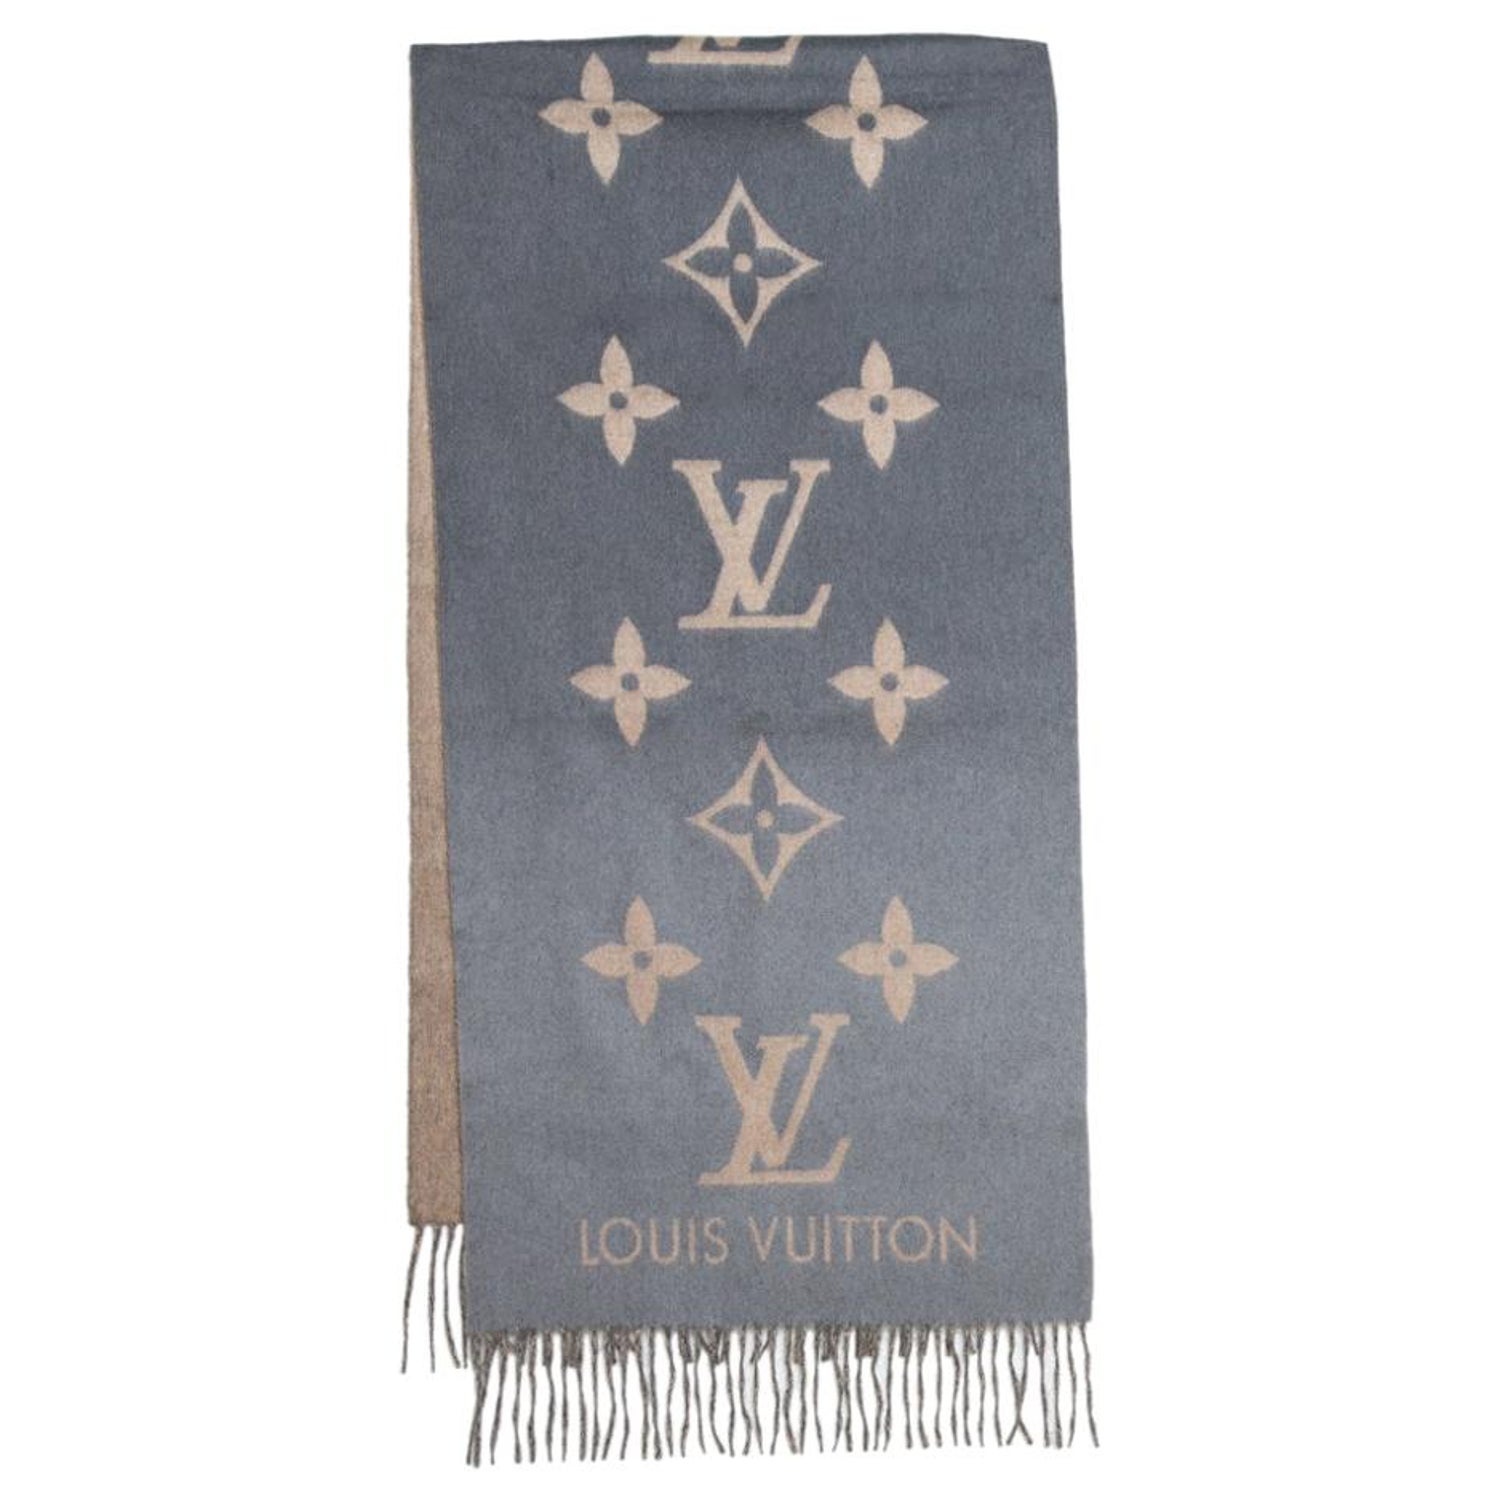 Louis Vuitton Monogram Gradient T-Shirt (Noir Blanc) Review